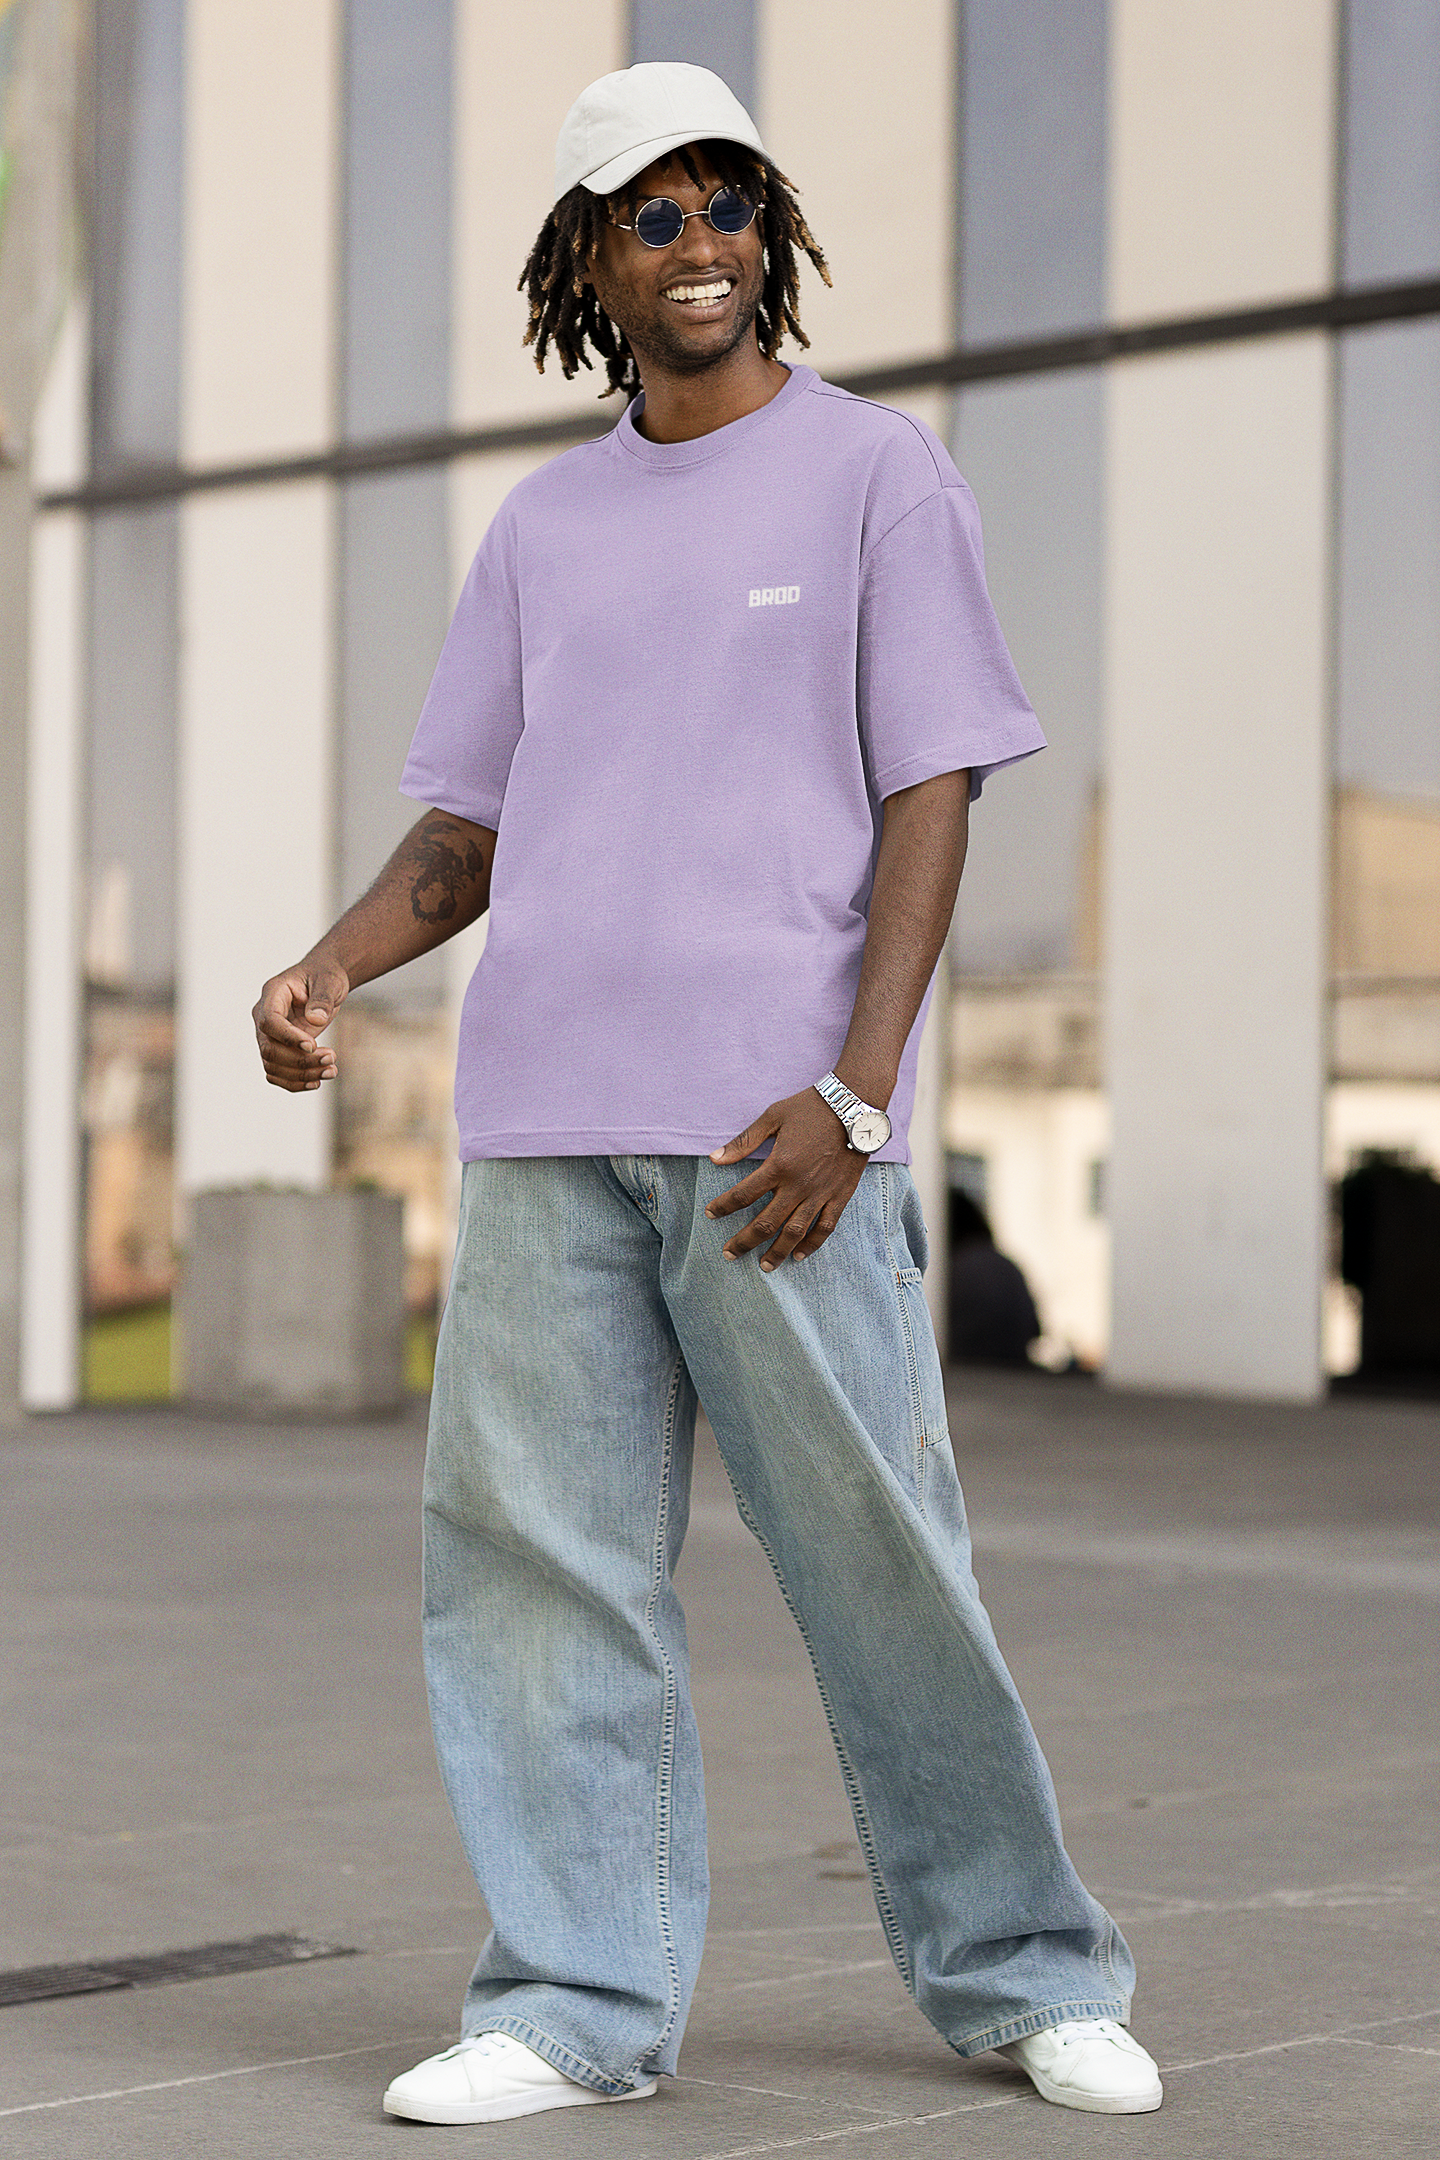 regeringstid Trives Colonial Brod Pastel Purple Streetwear Tshirt – The Brod Store